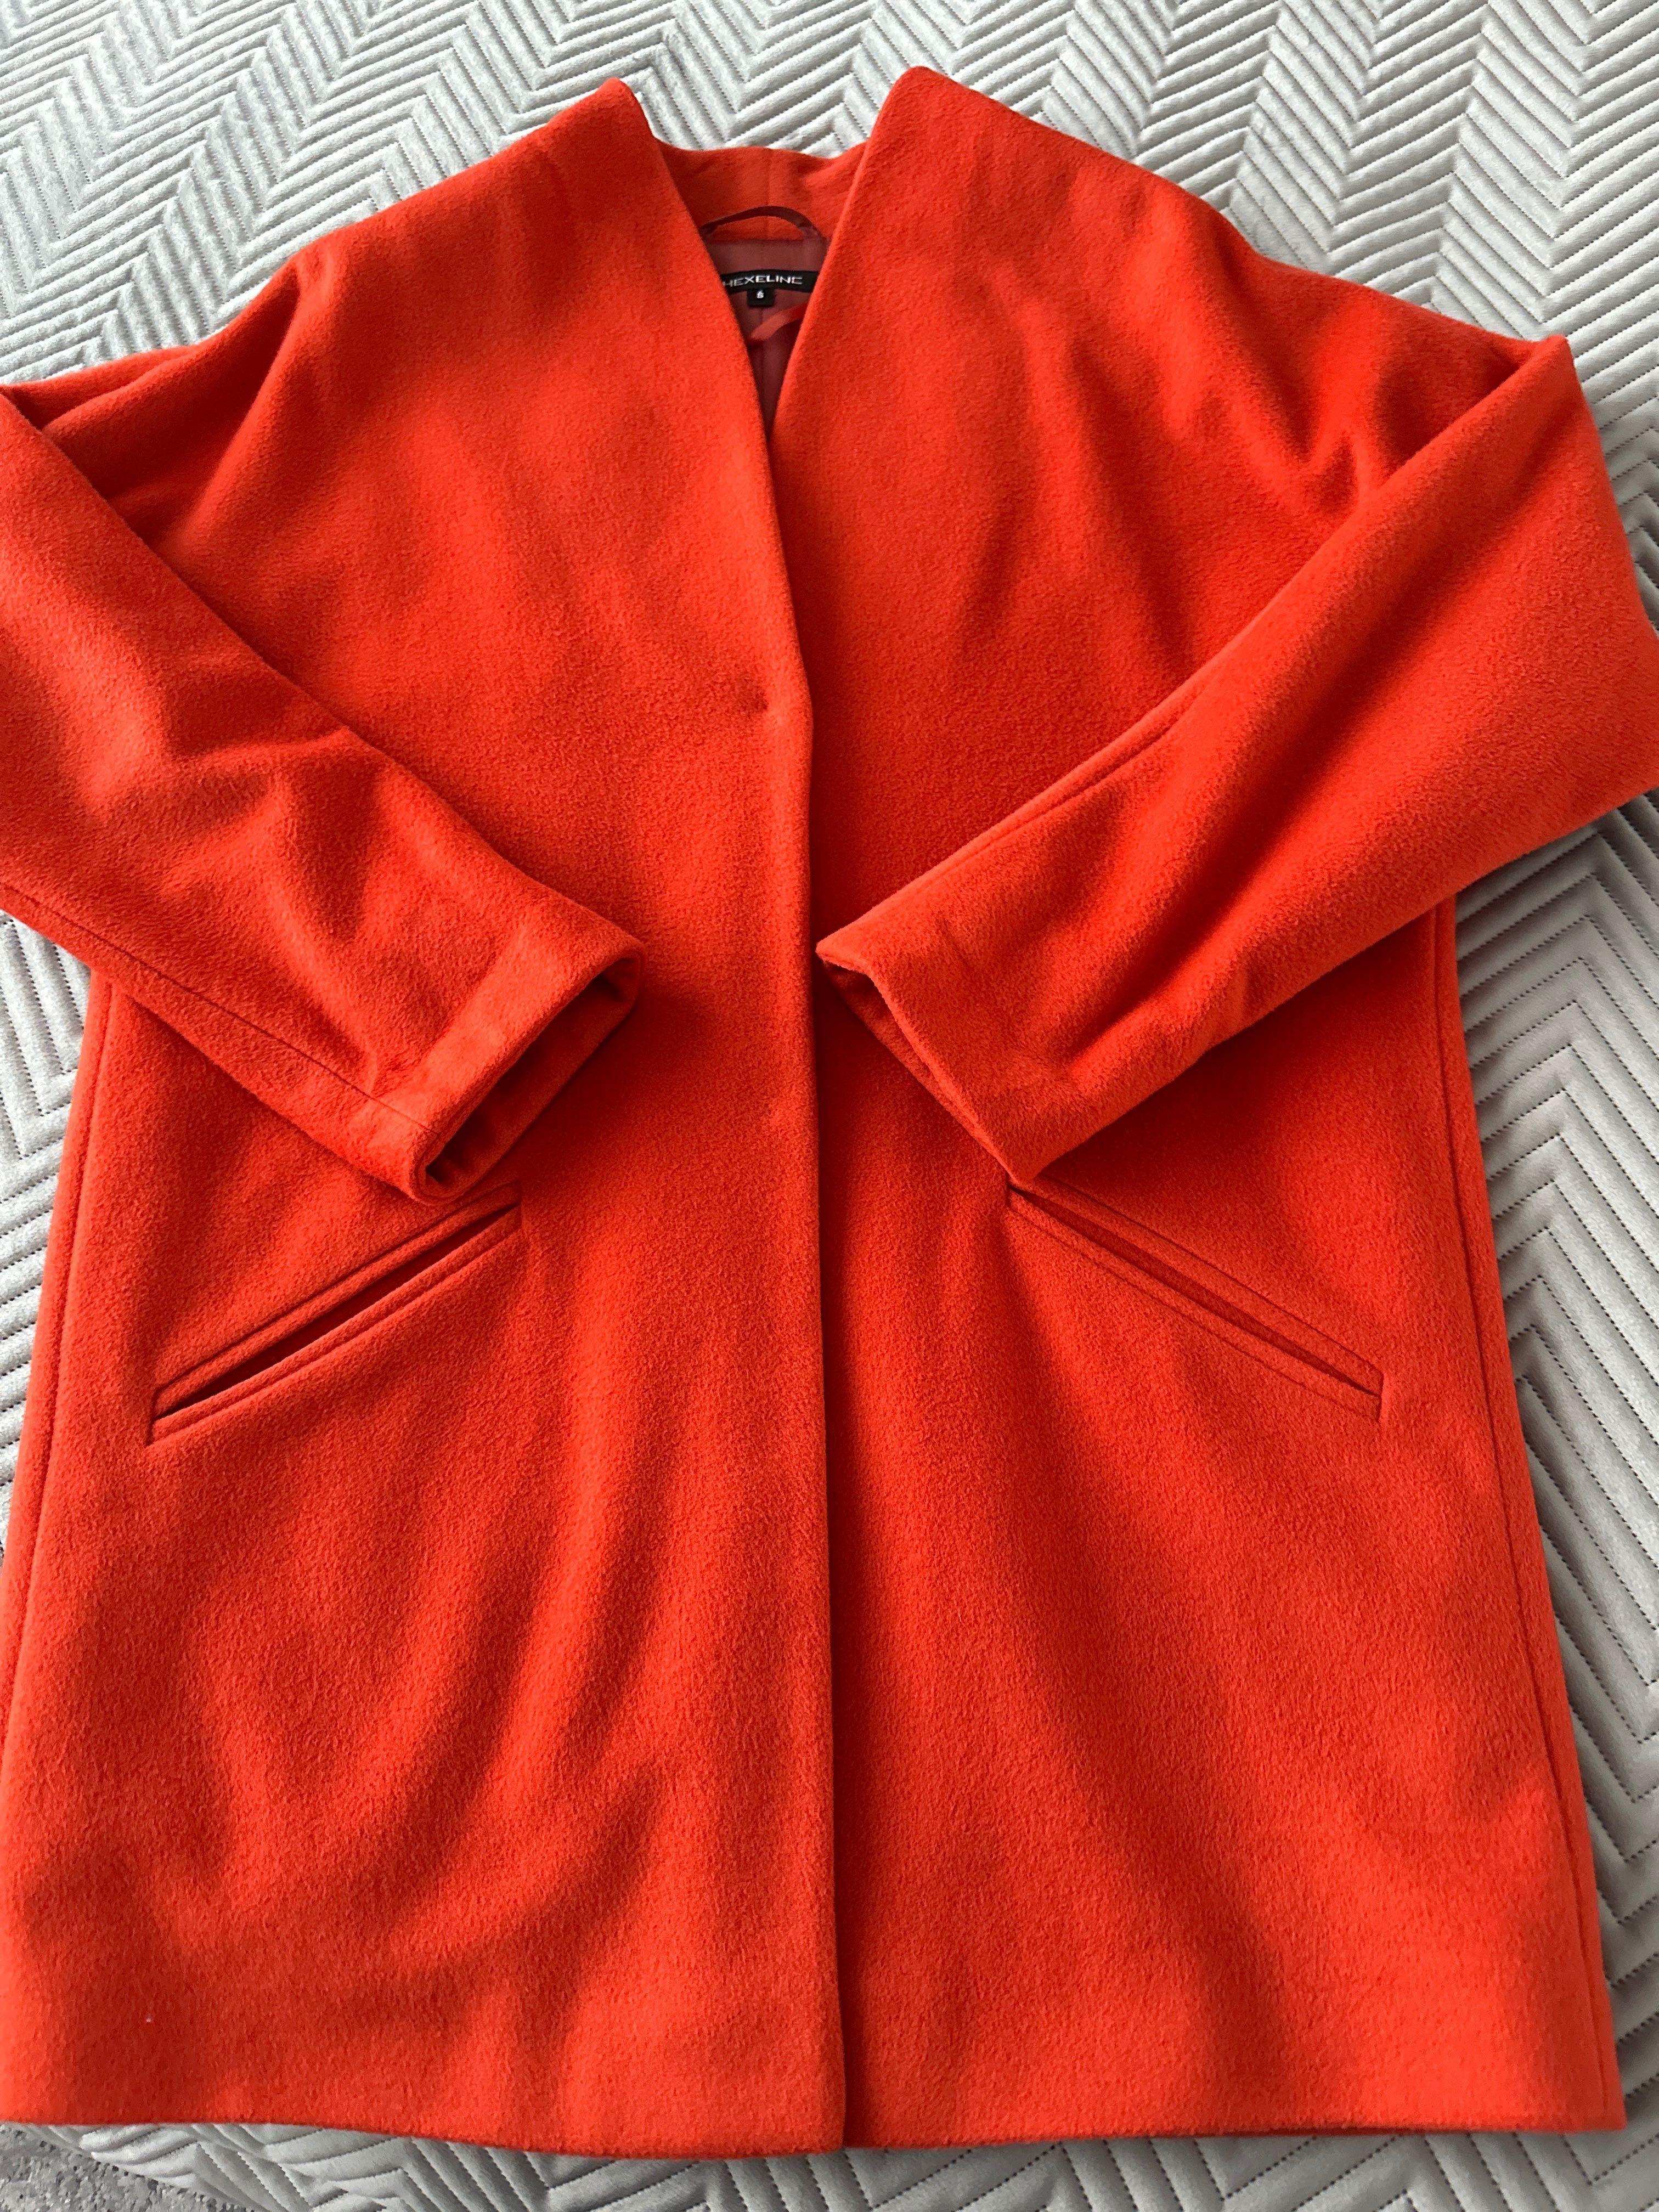 Płaszcz jesiennydamski marki Hexeline, rozmiar 36.